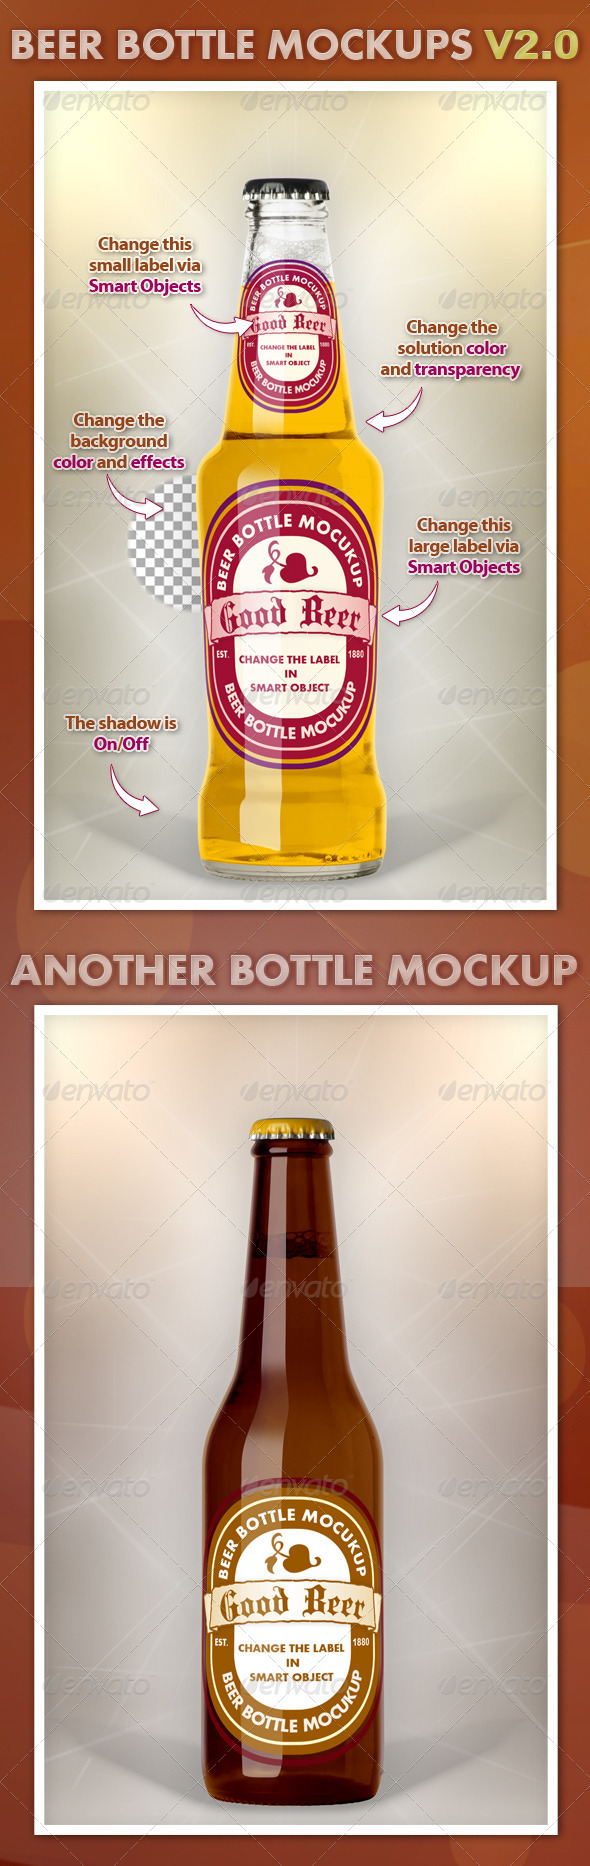 Beer Bottle Mockups V2.0